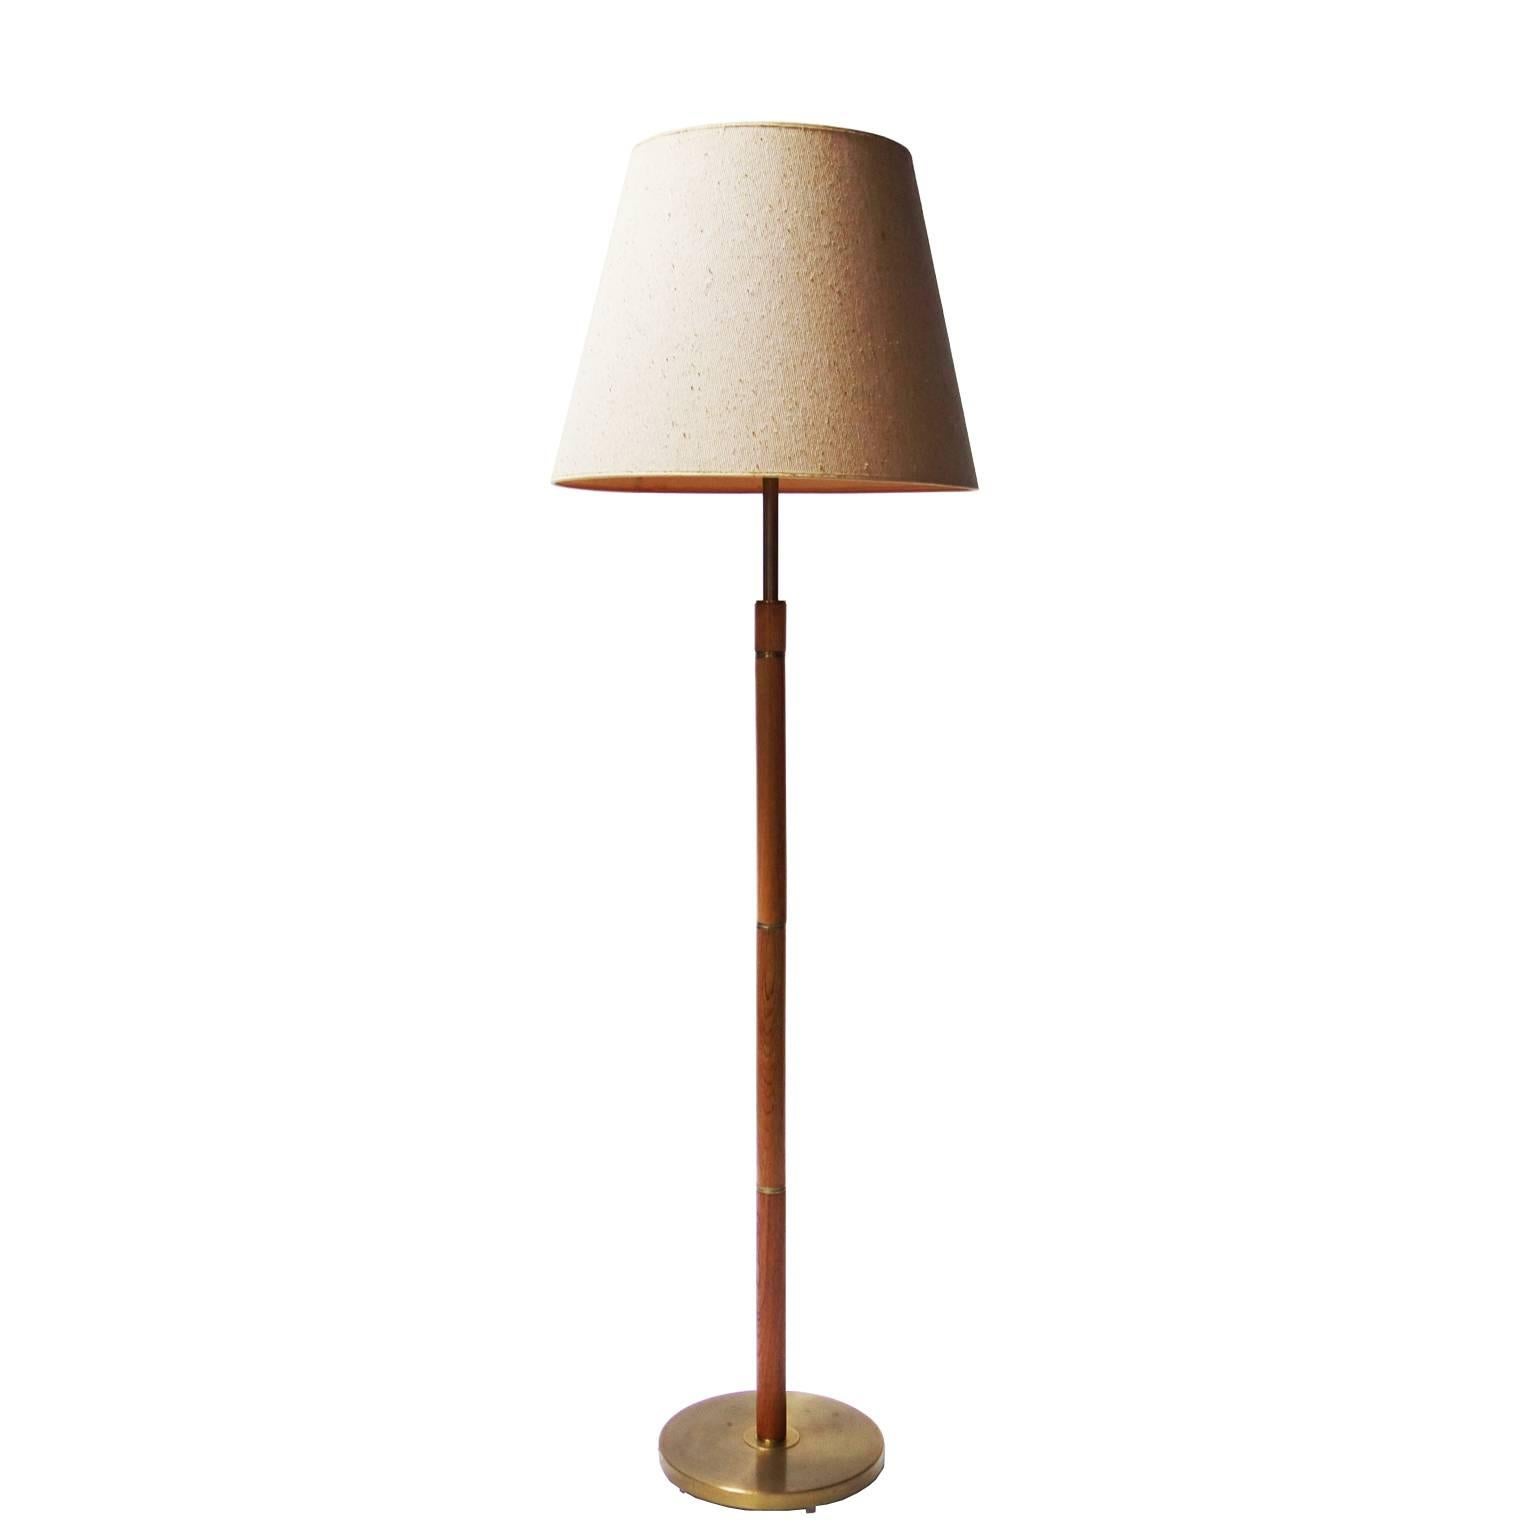 Oak and Brass Floor Lamp from Denmark